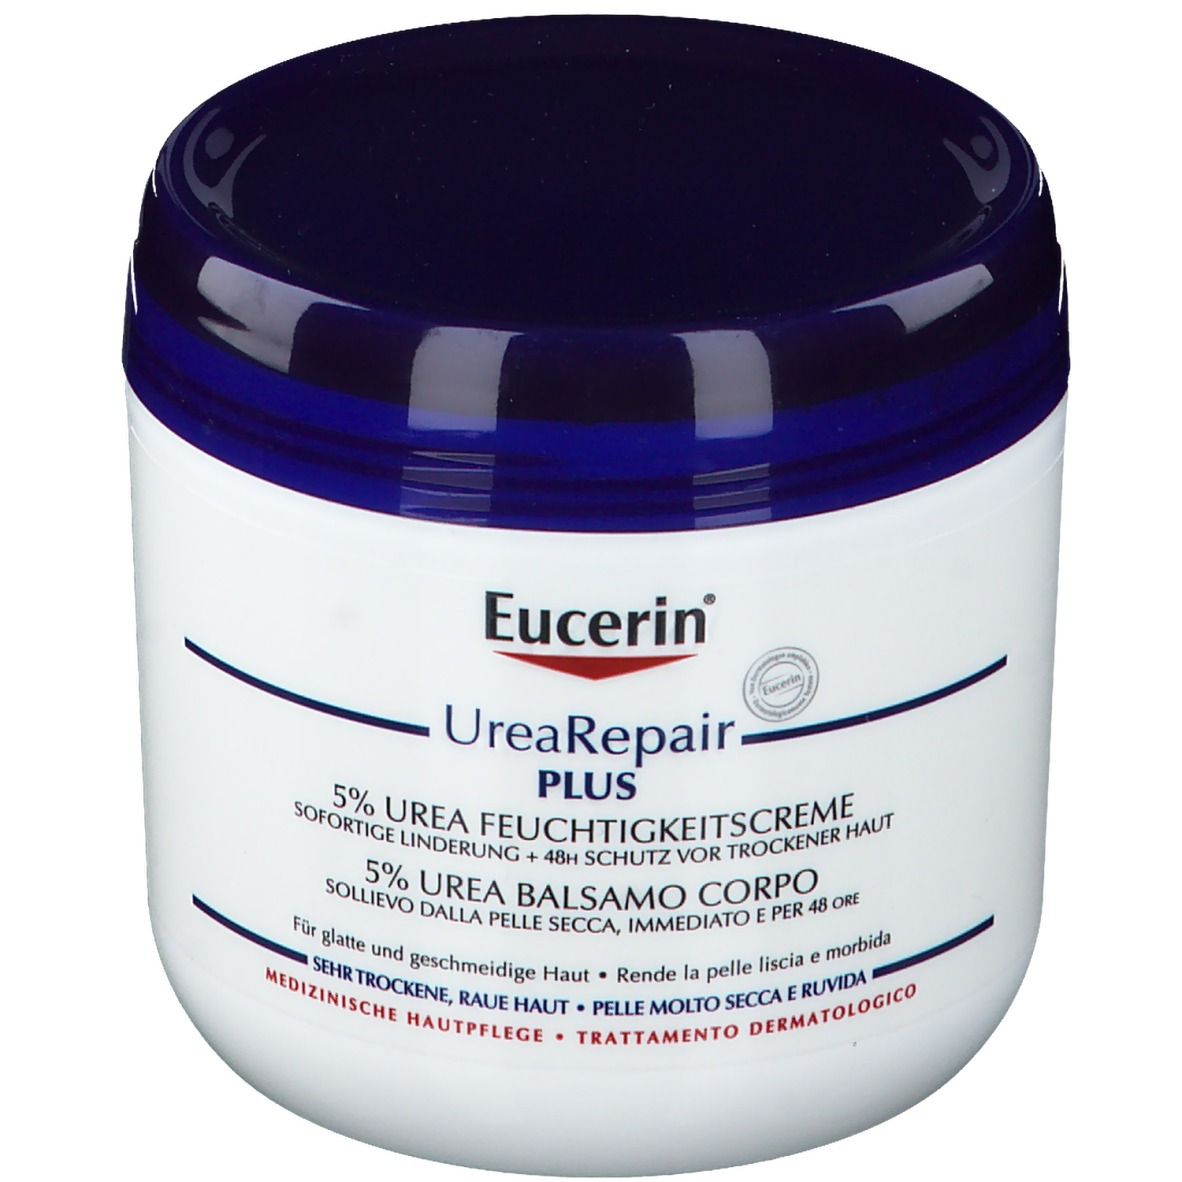 Image of Eucerin® UreaRepair PLUS Feuchtigkeitscreme 5%